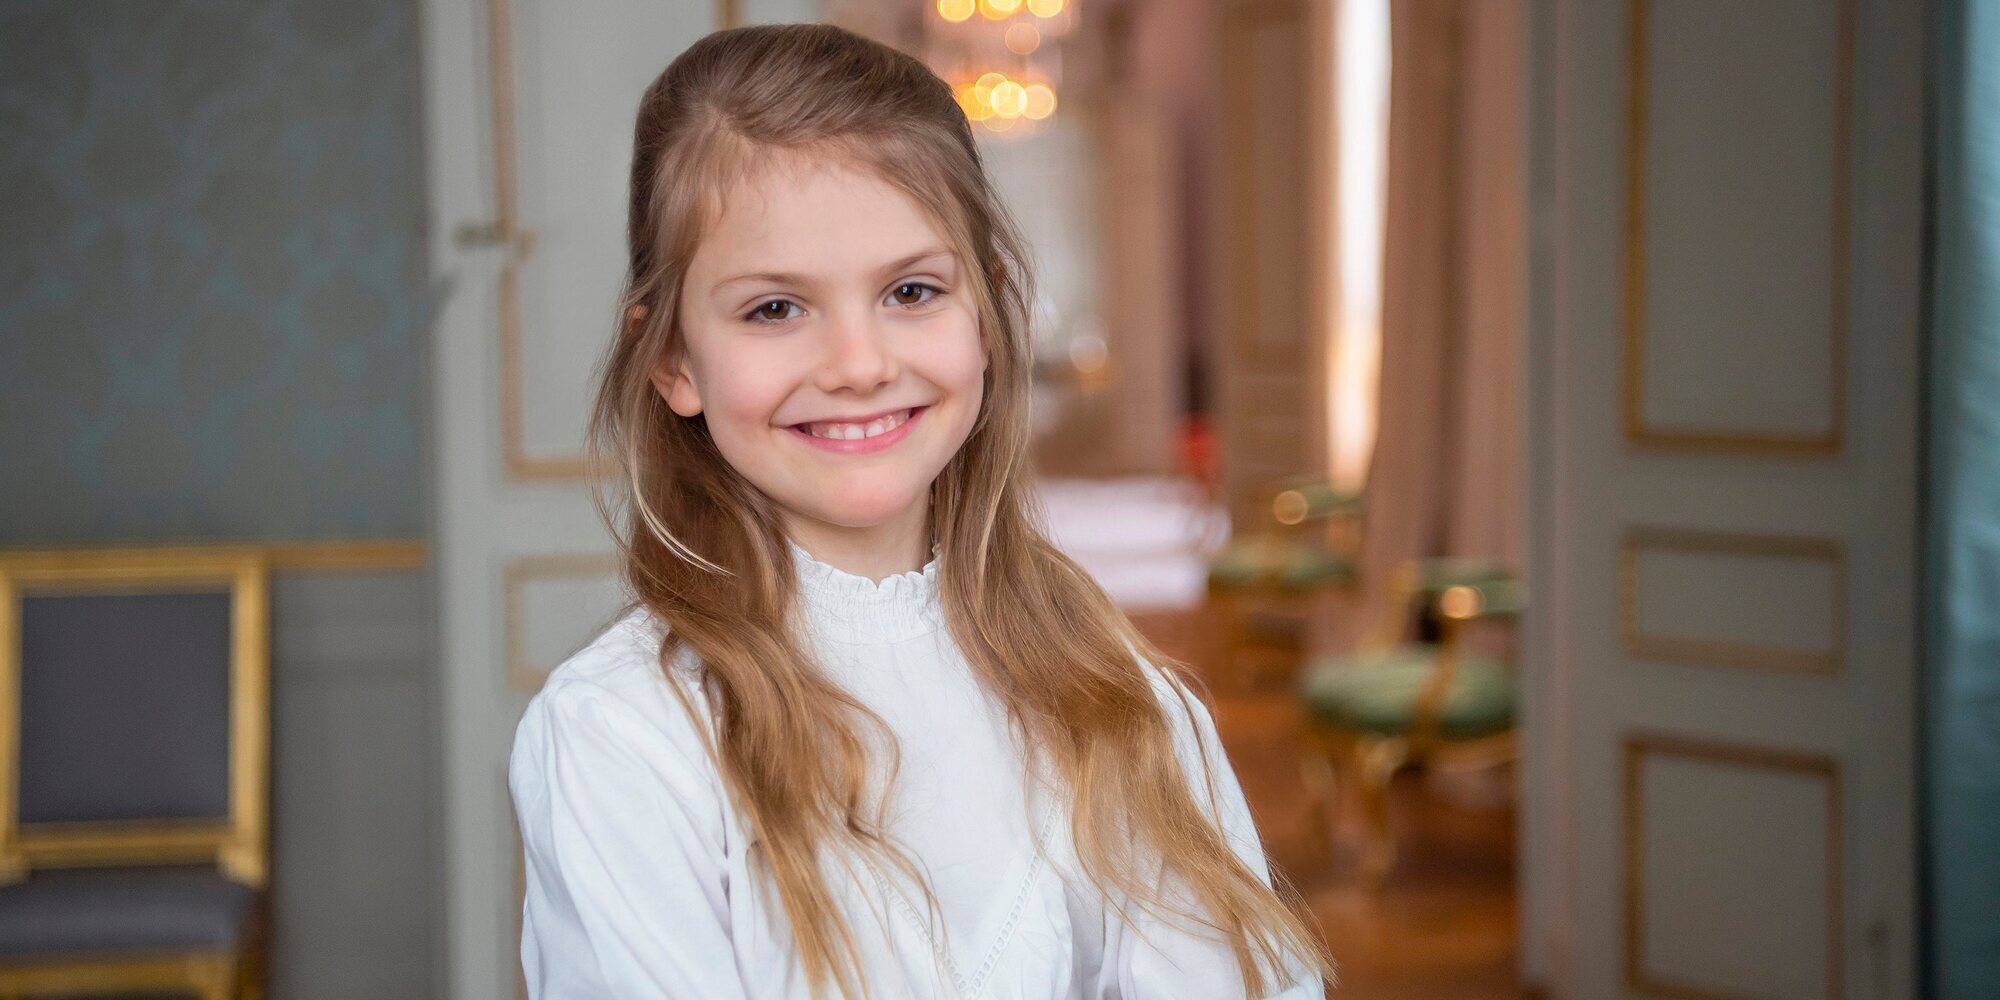 Estela de Suecia podrá reinar si se casa con una mujer